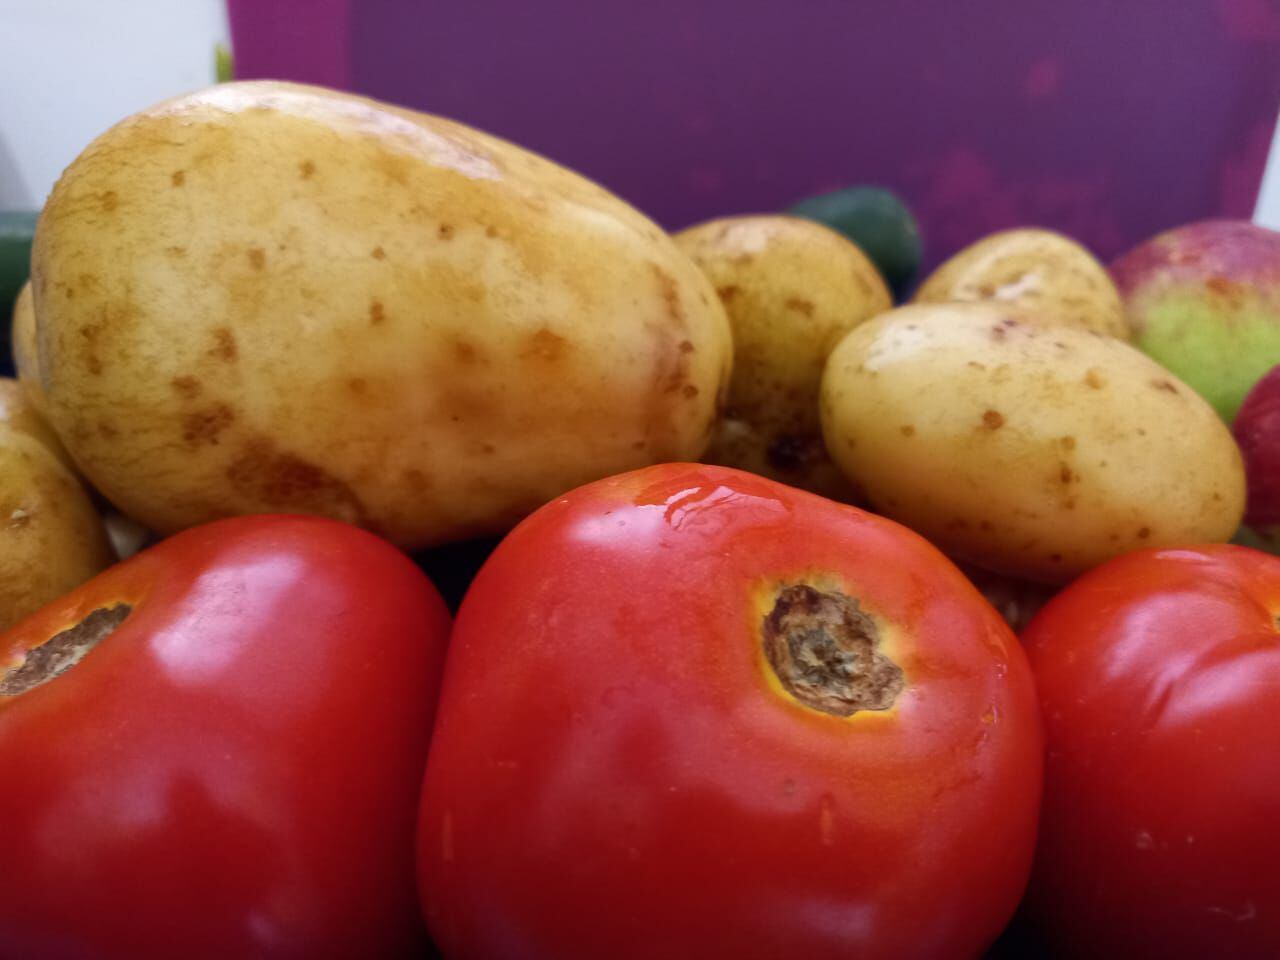 El tomate y la papa son parte de los alimentos, importantes para los hogares, que han tenido importantes aumentos en los últimos 12 meses.